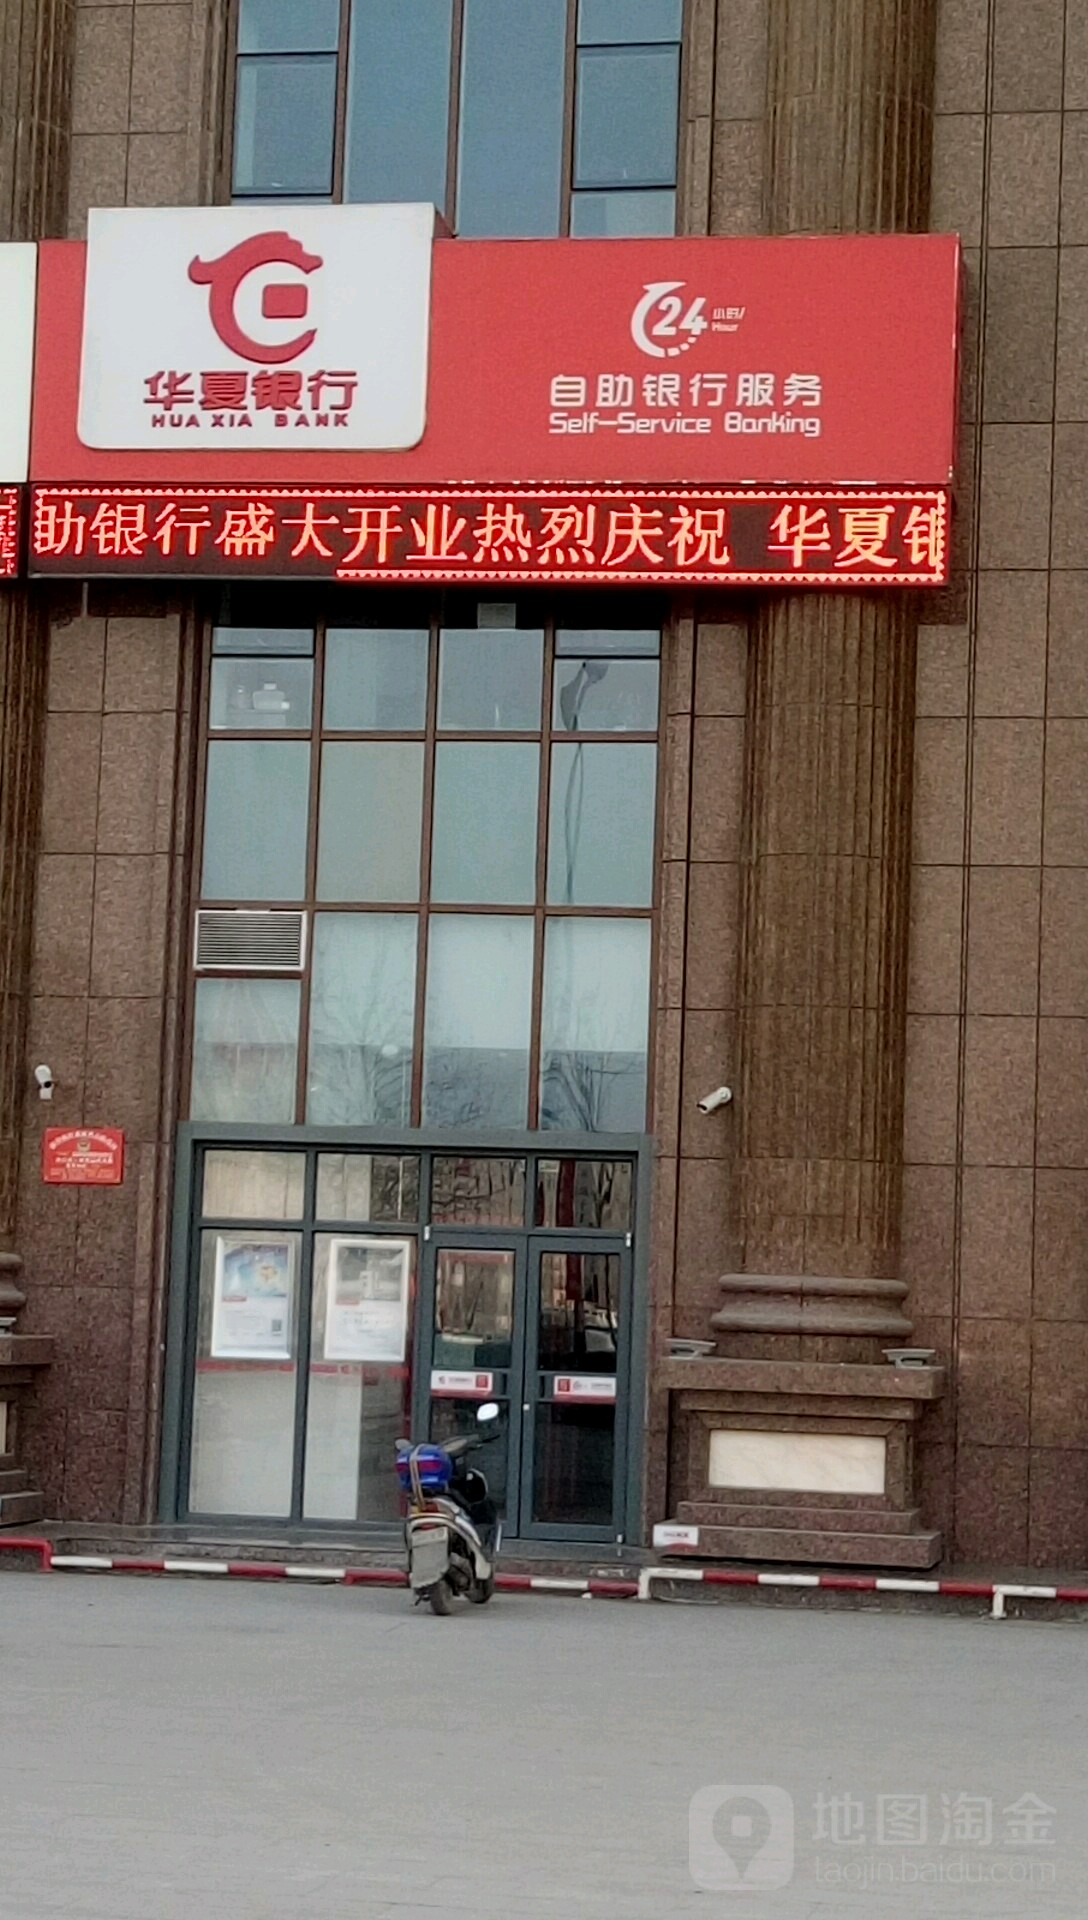 華夏銀行24小時自助銀行